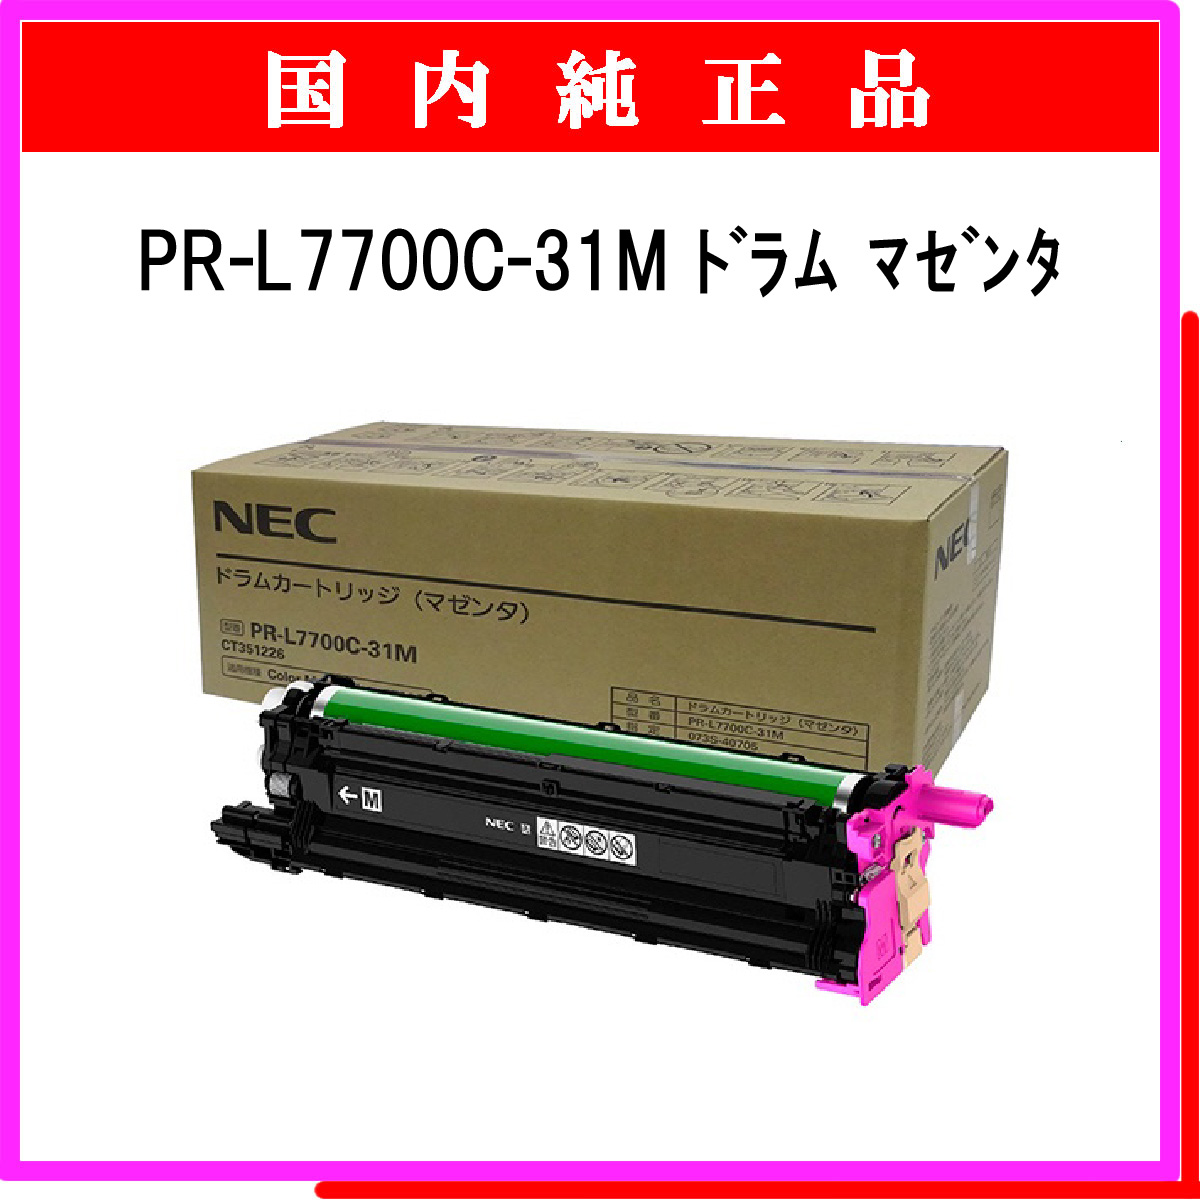 PR-L7700C-31M 純正